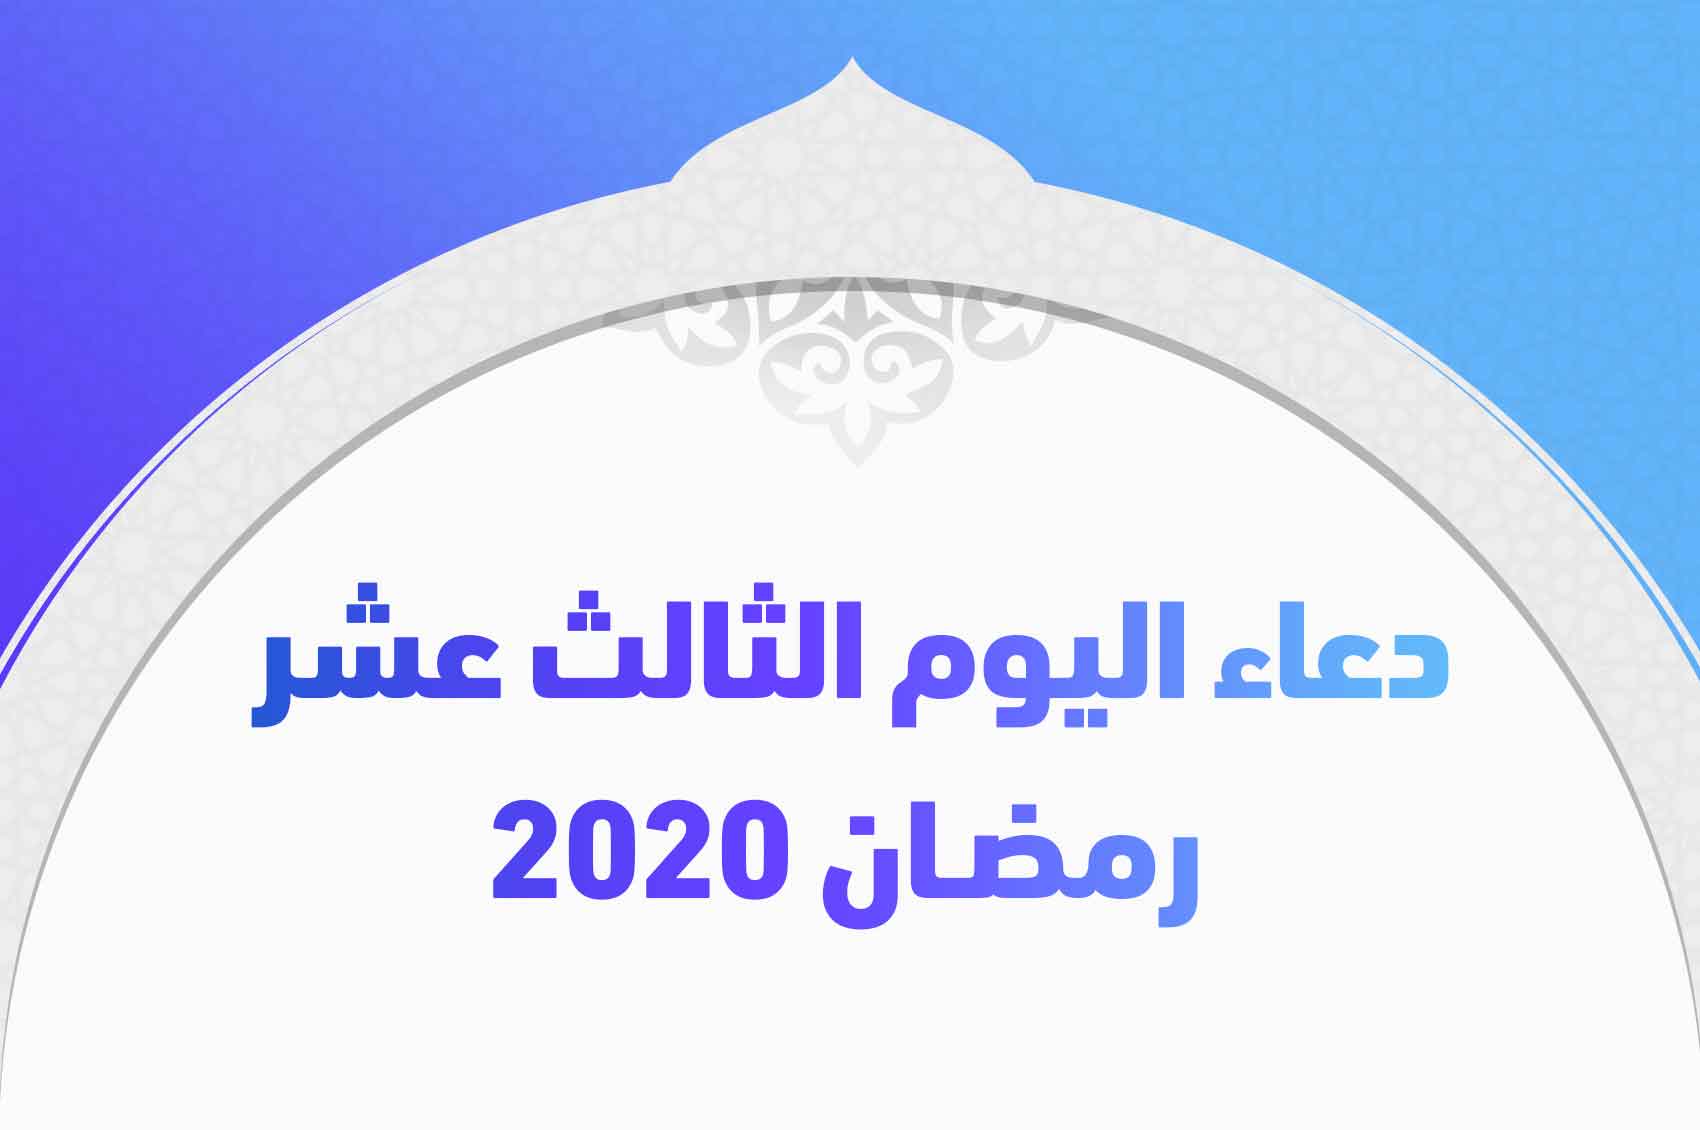 أدعية ليوم الثالث عشر من رمضان 2020